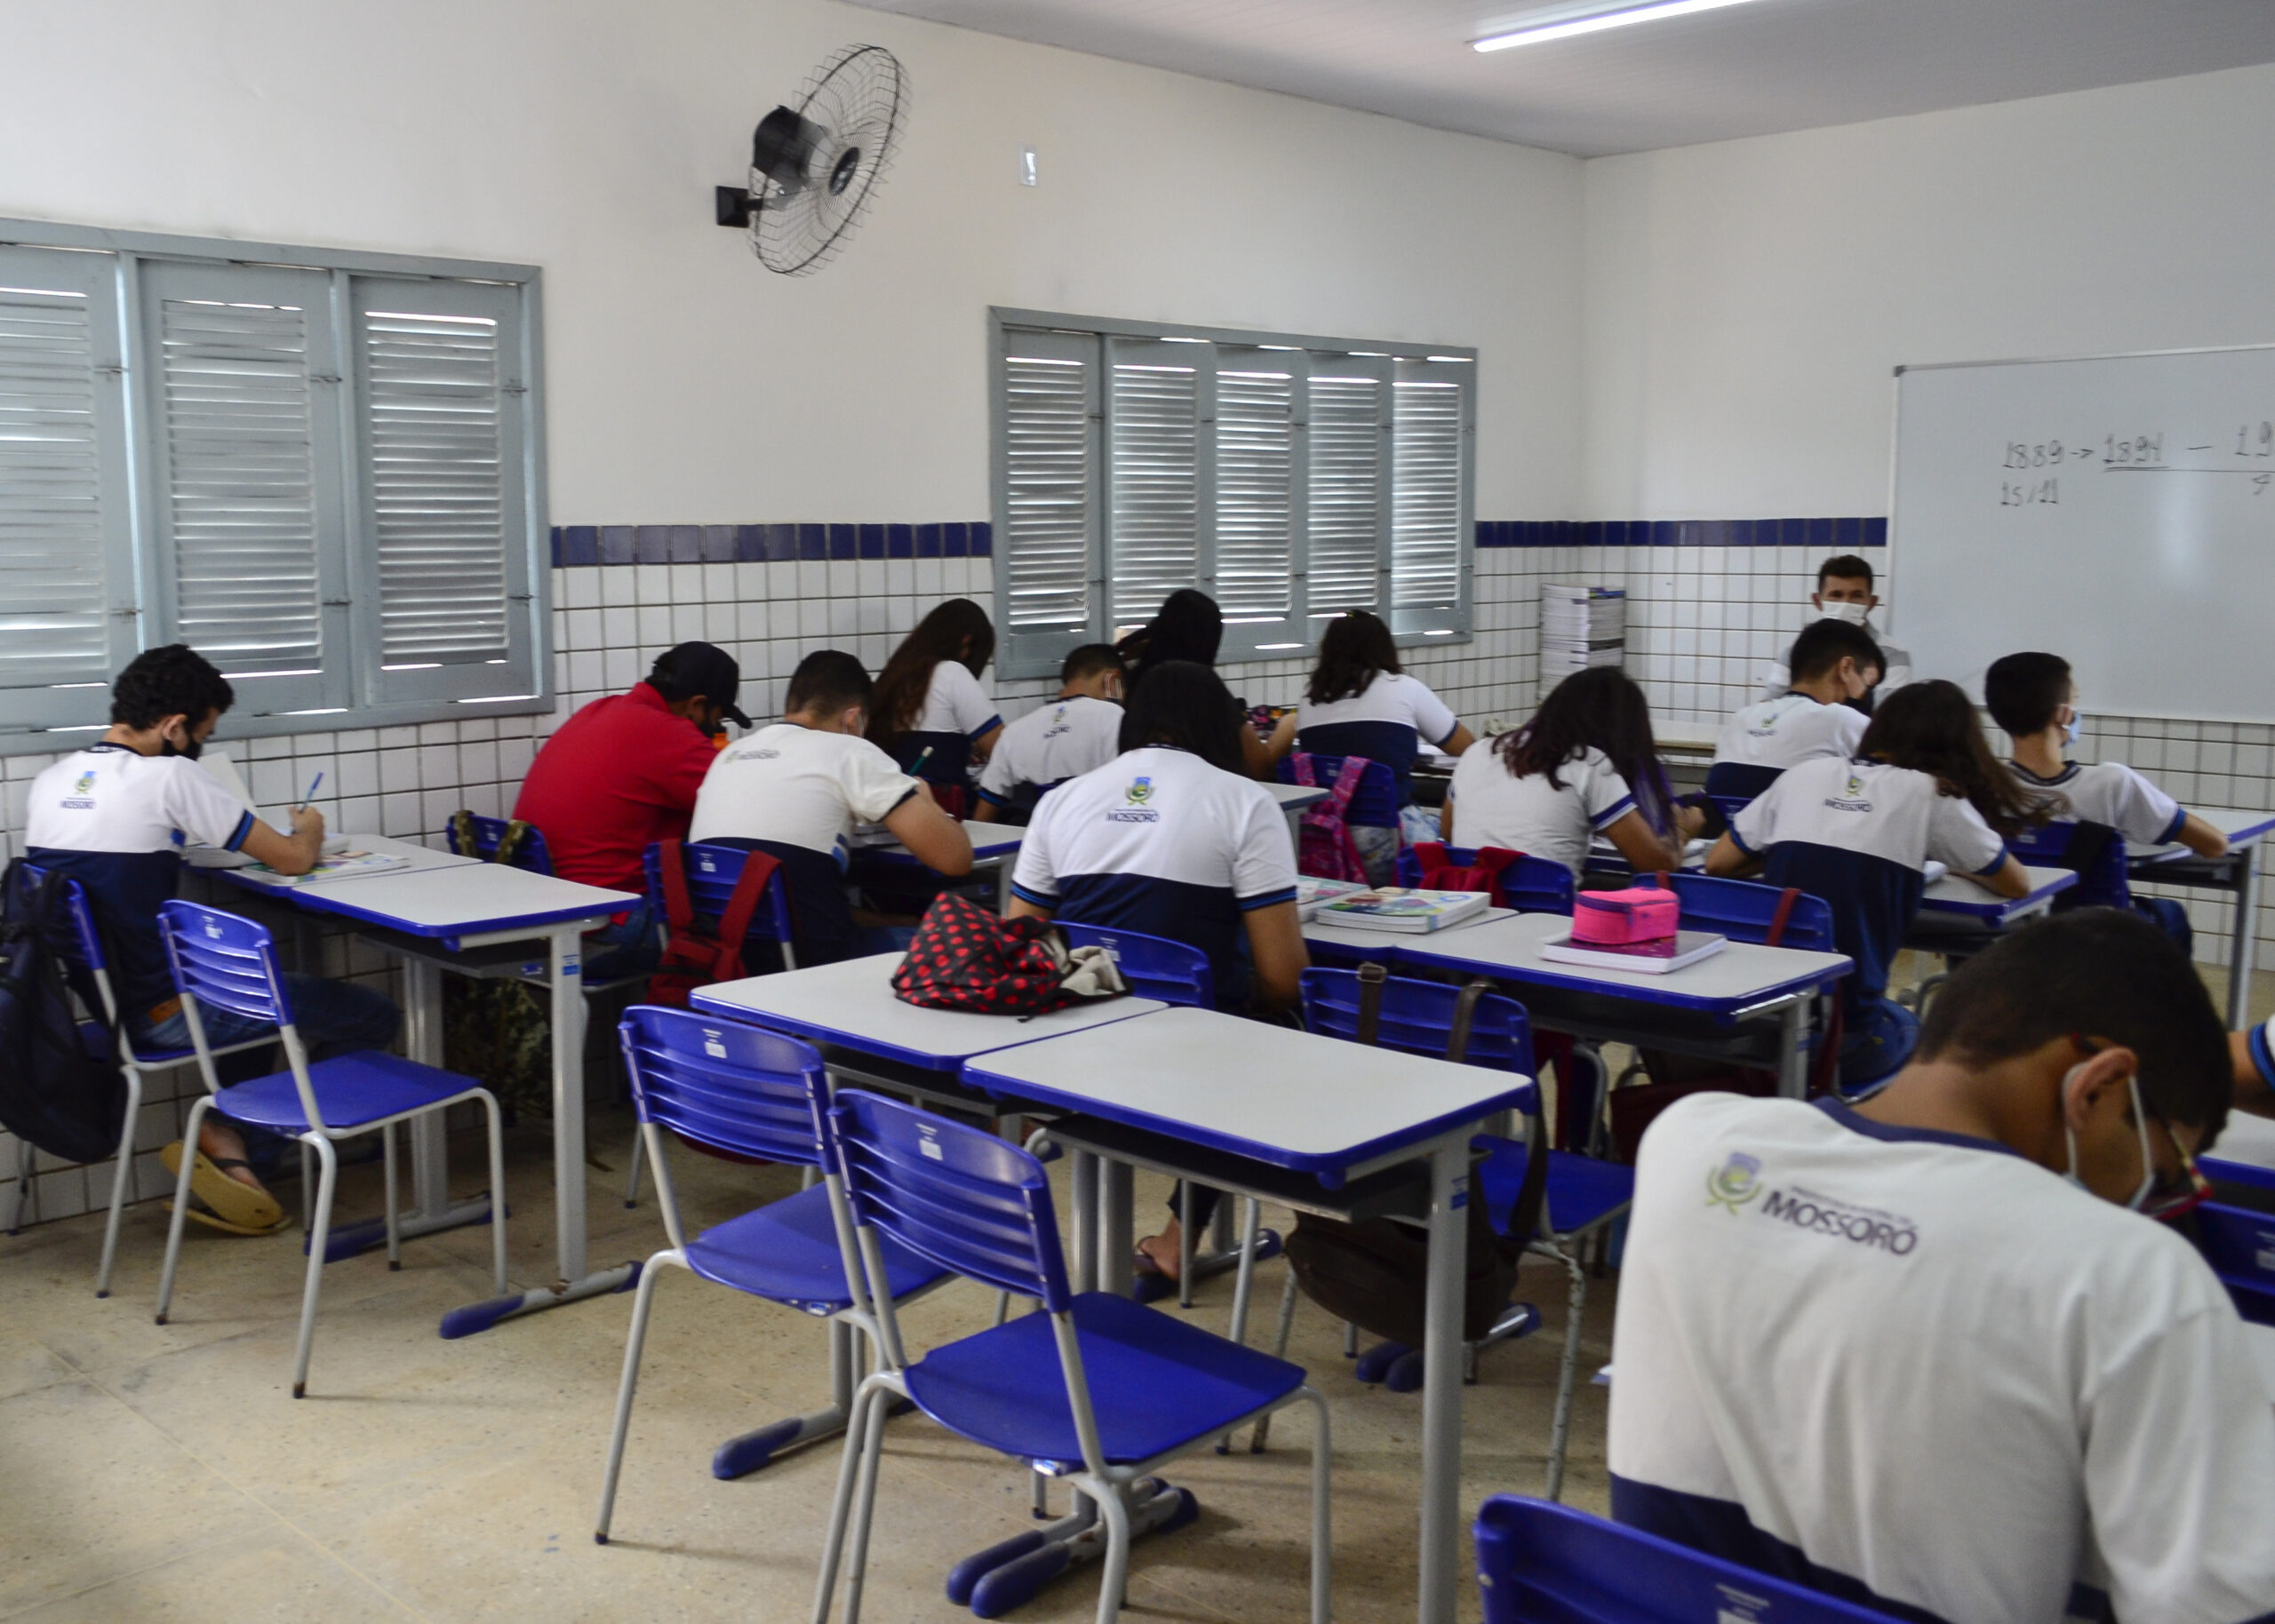 Prefeitura de Mossoró inicia período de matrículas da rede municipal de ensino